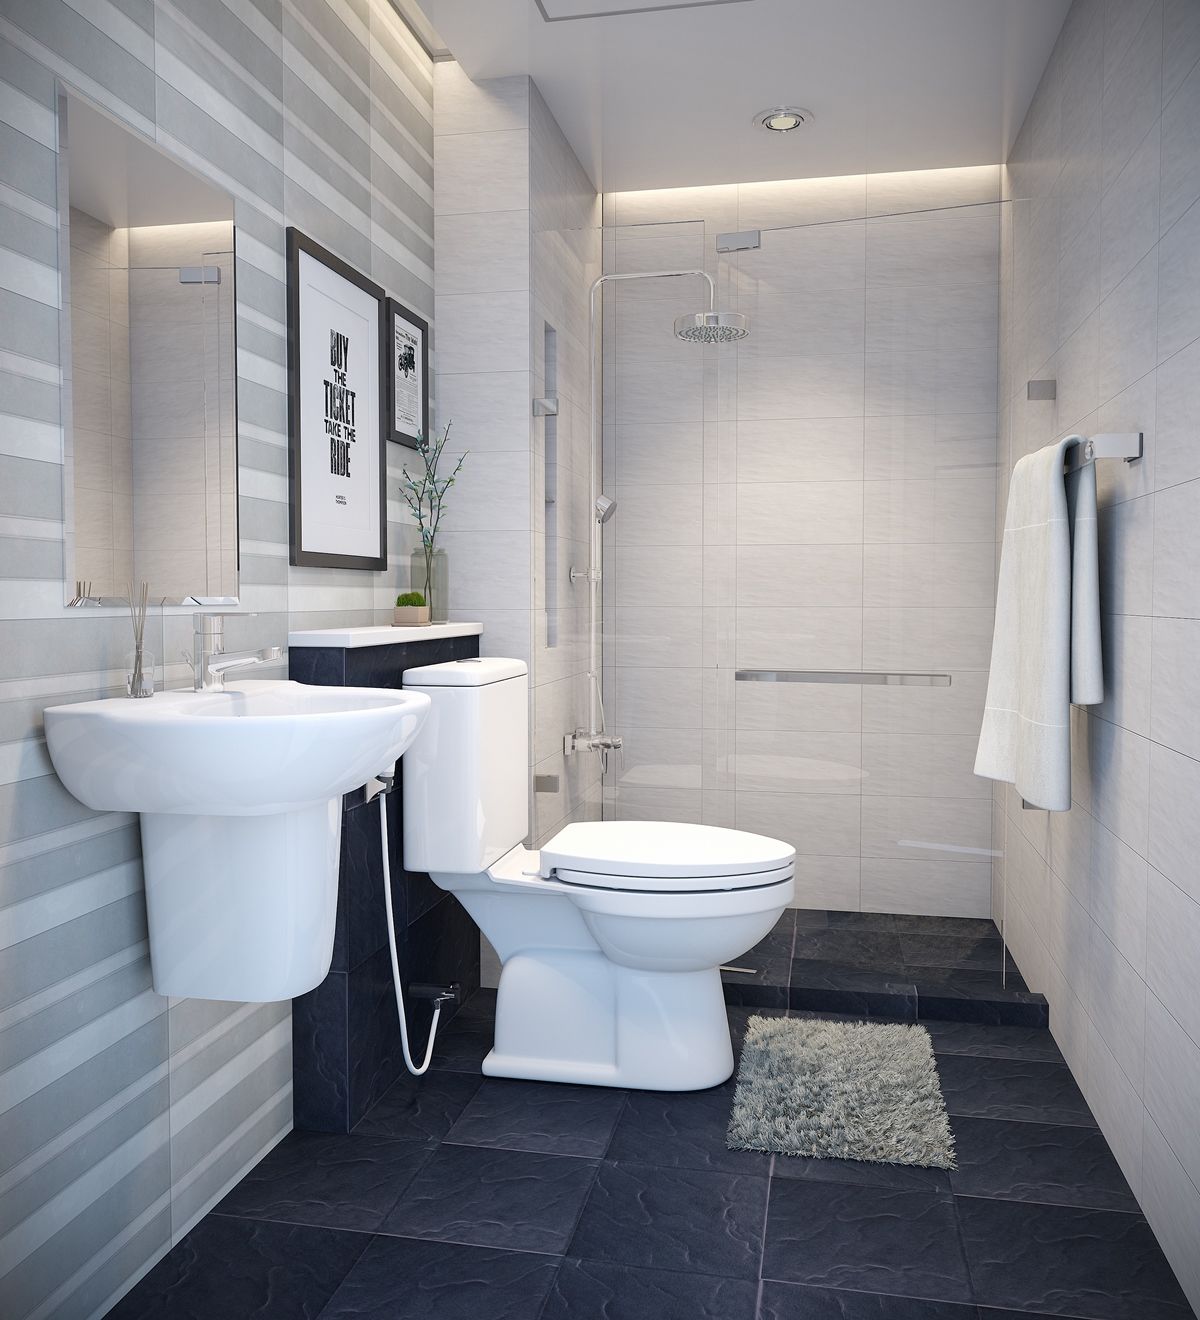 73 mẫu Thiết kế nhà tắm đẹp đơn giản nội thất phòng tắm hiện đại